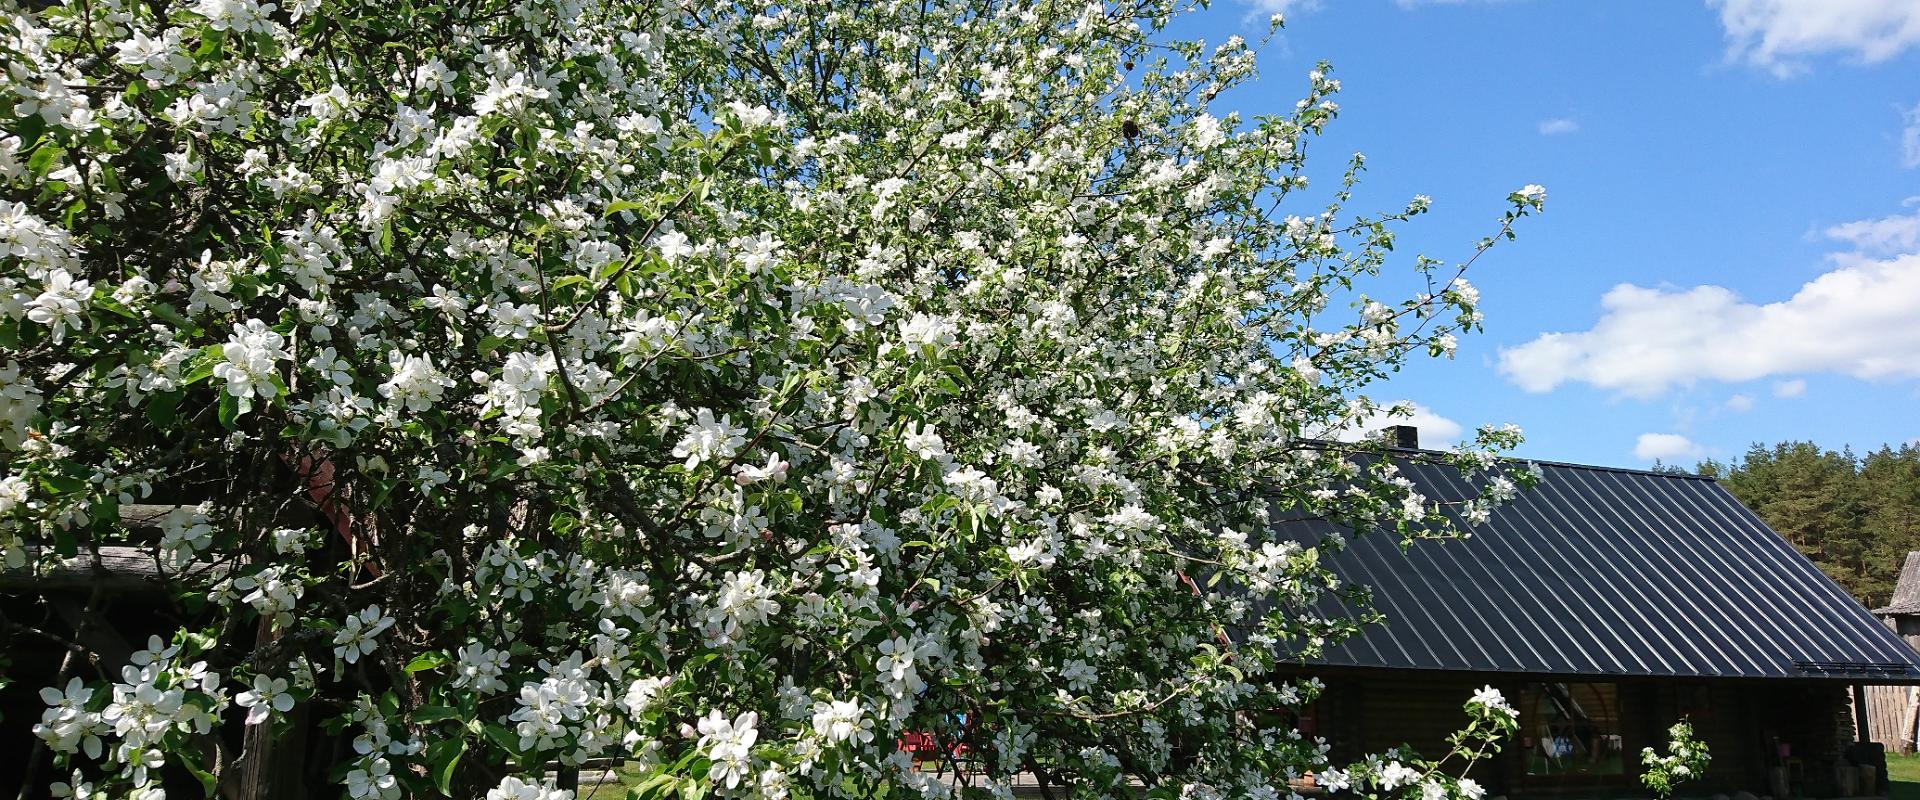 Marknatalu Puhkemaja Saunamaja- väike armas palkmaja,  mille kõrval on imeilus kevadine õitevahus õunapuu.